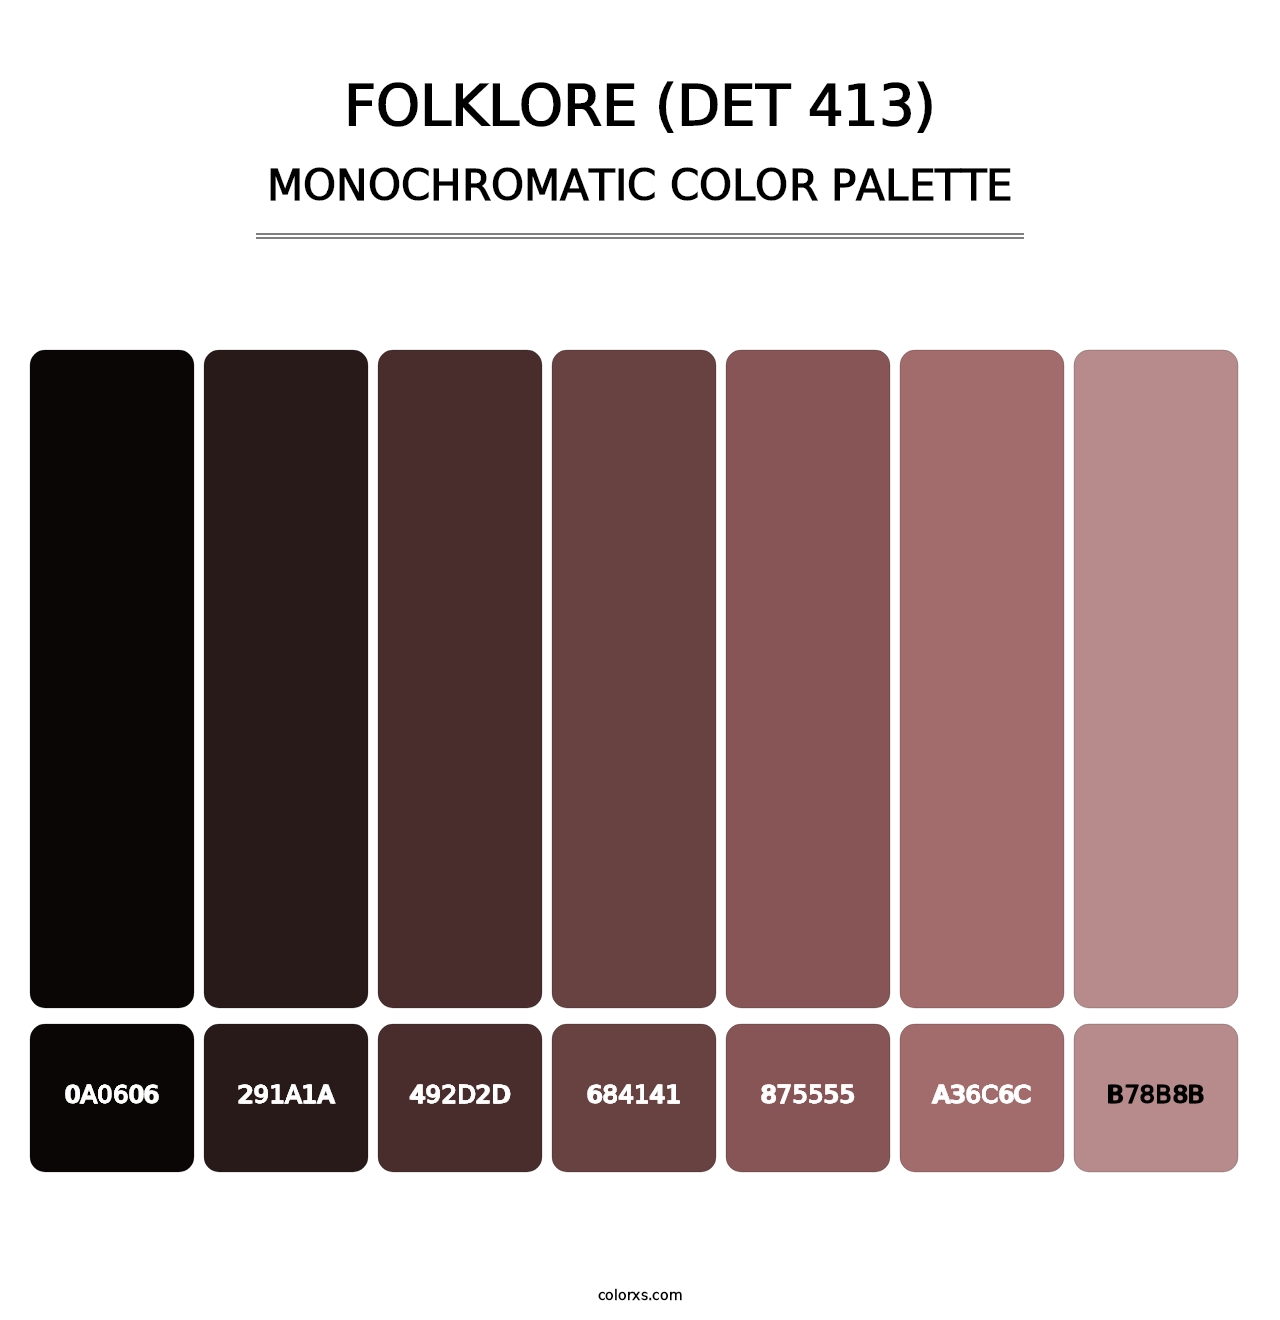 Folklore (DET 413) - Monochromatic Color Palette